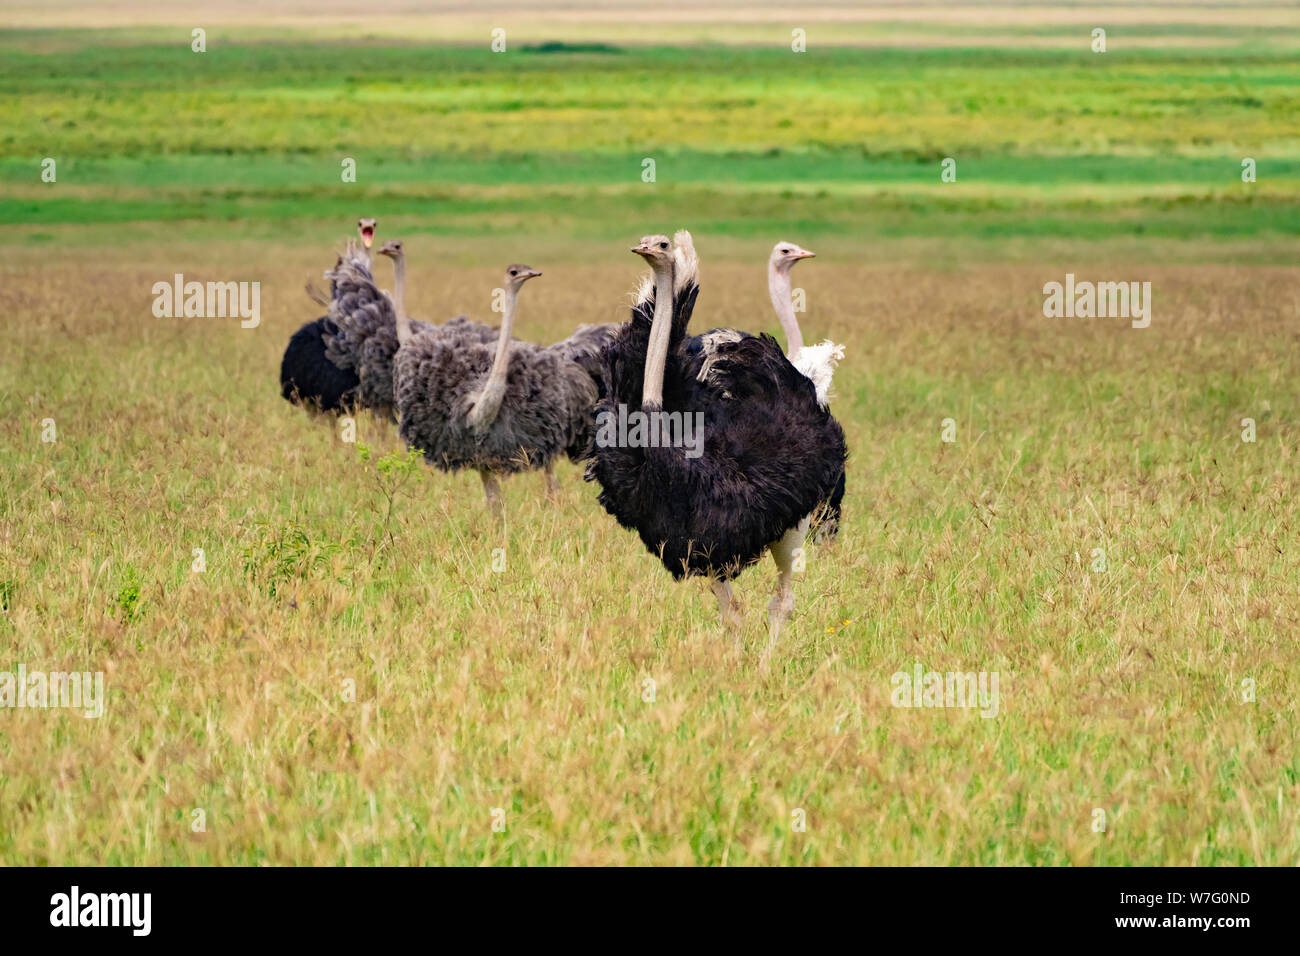 Eine Familie von Wilde Strauße (Struthio camelus). Diese Gruppe besteht aus Frauen und ein Mann. Der Strauß, einen flugunfähigen Vogel, ist die weltweit größte und t Stockfoto